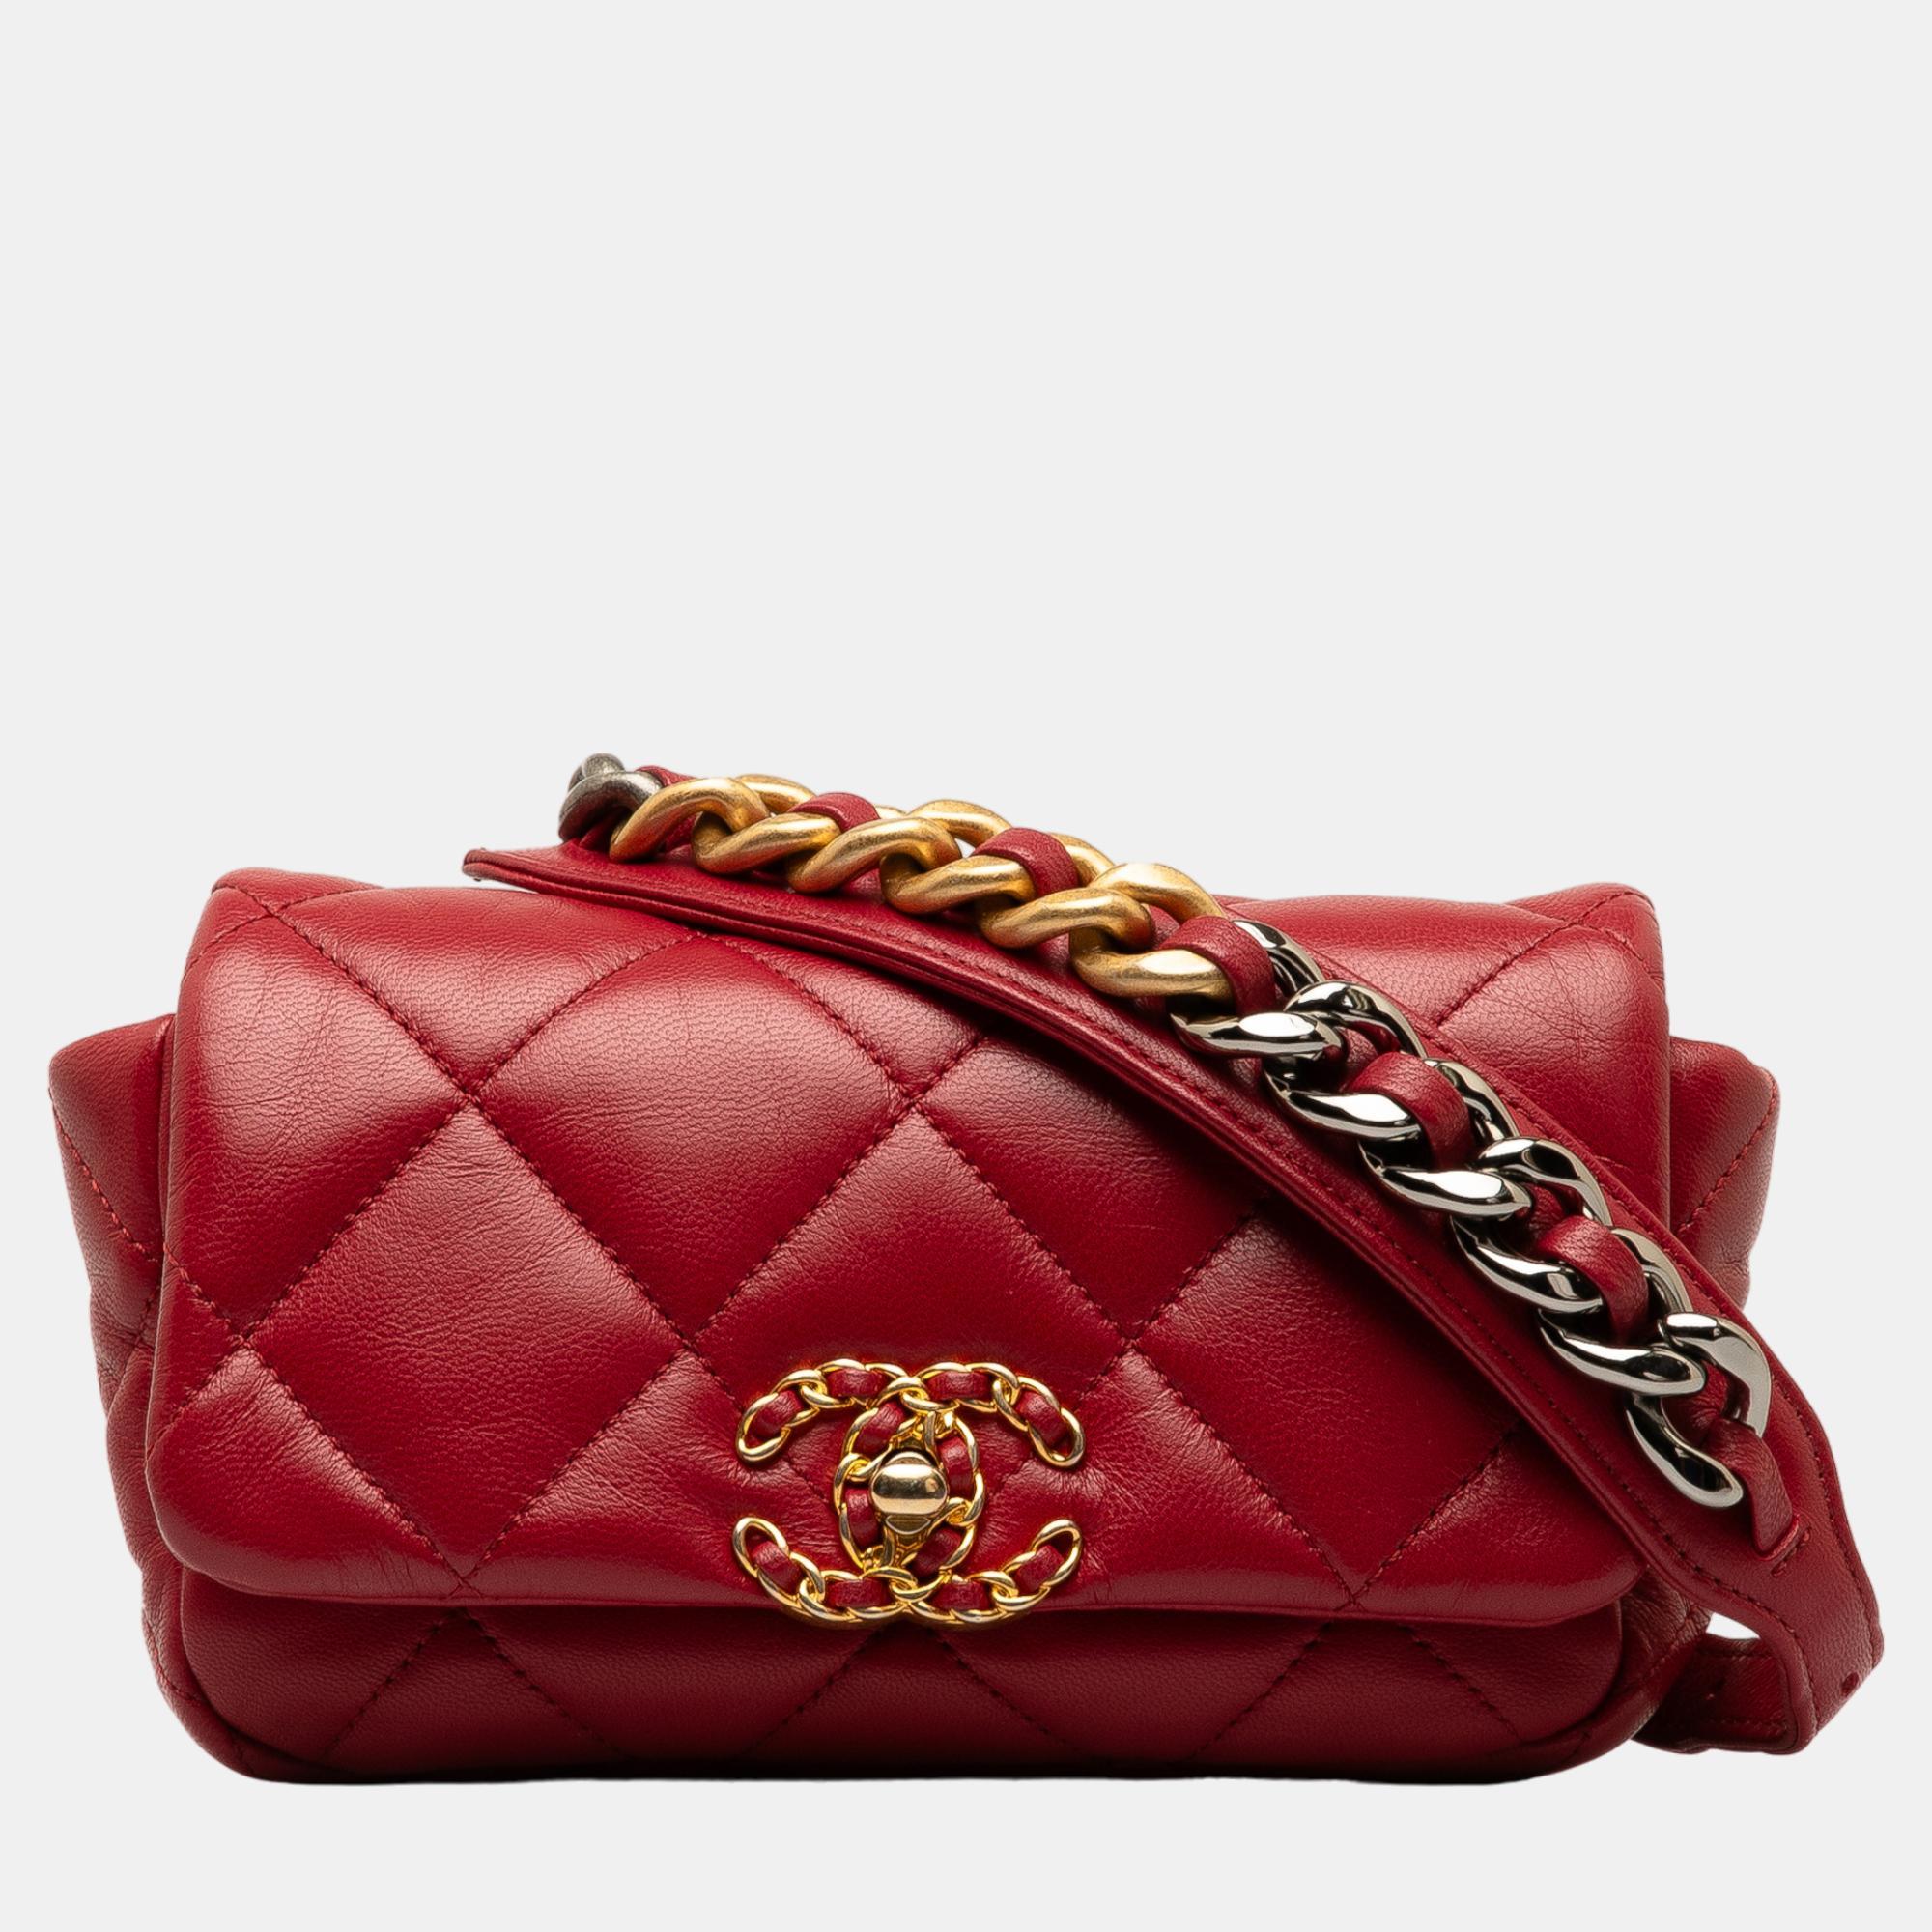 Chanel red lambskin 19 belt bag